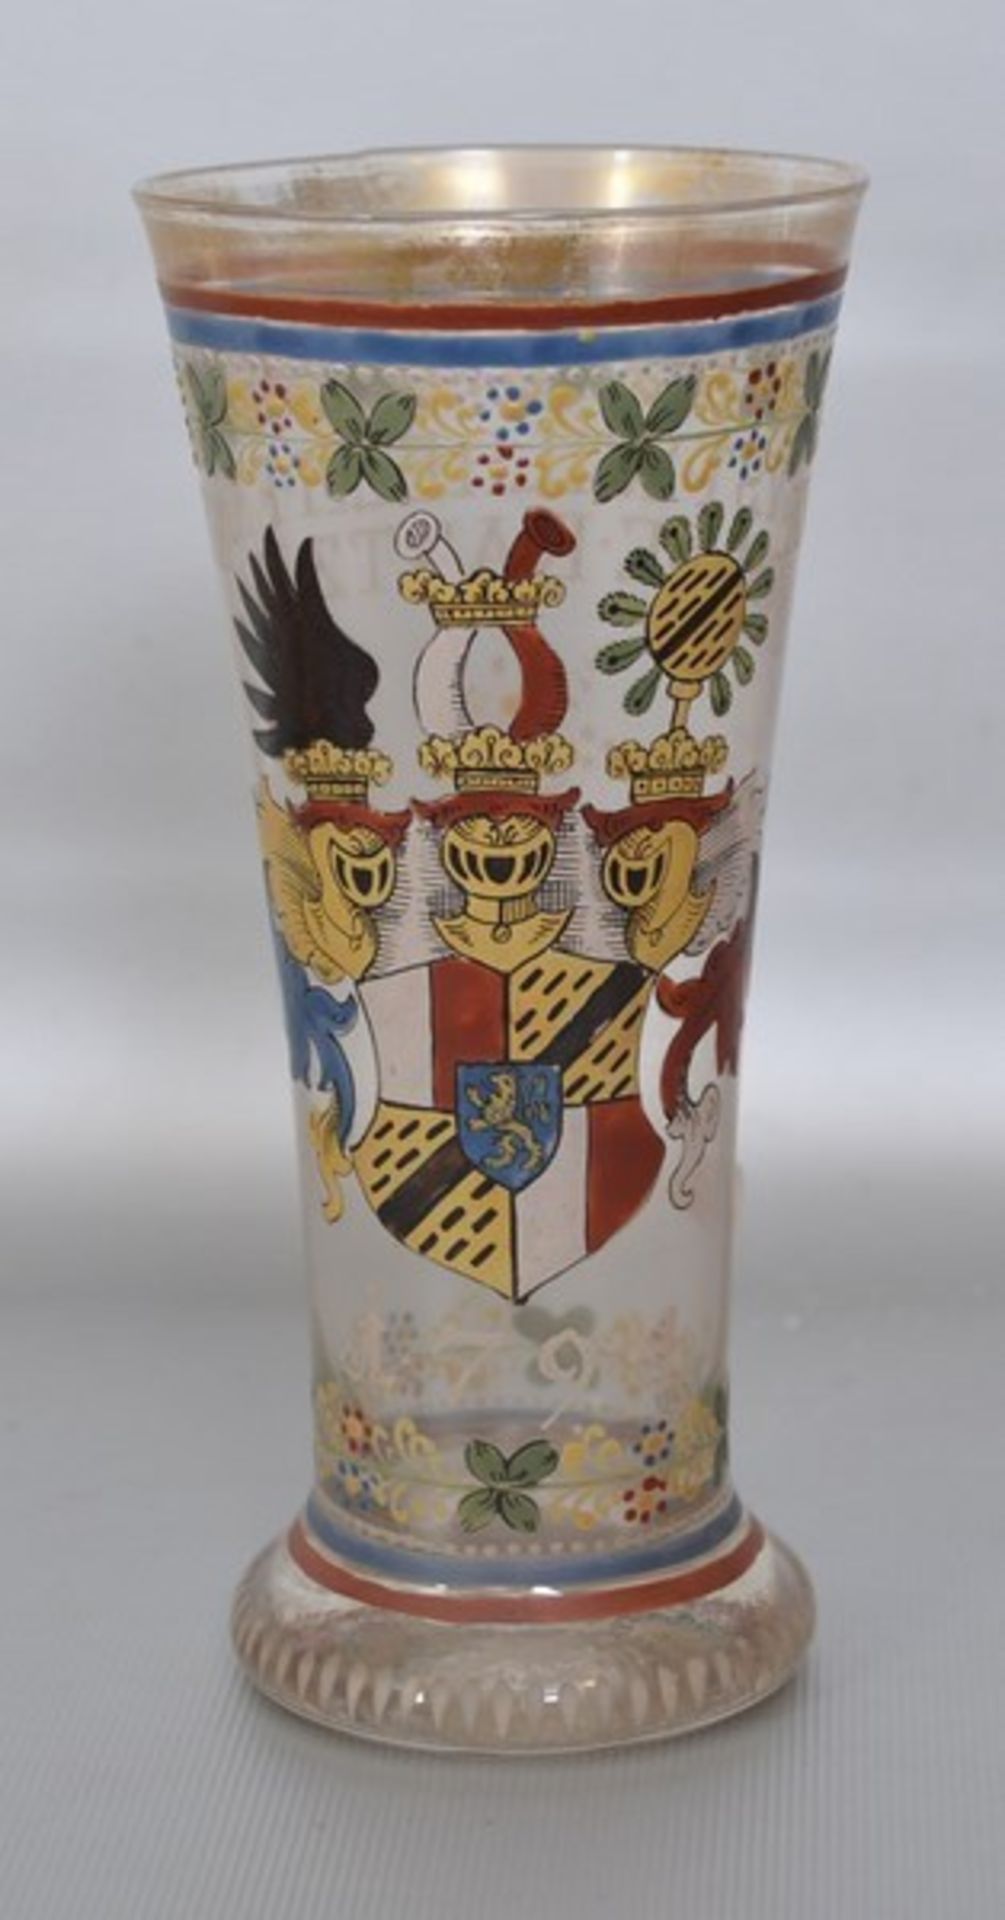 Becher farbl. Glas, bunt bemalt, mit Wappen und Ranken, mit Aufschrift und der Jahreszahl 1794, H 16